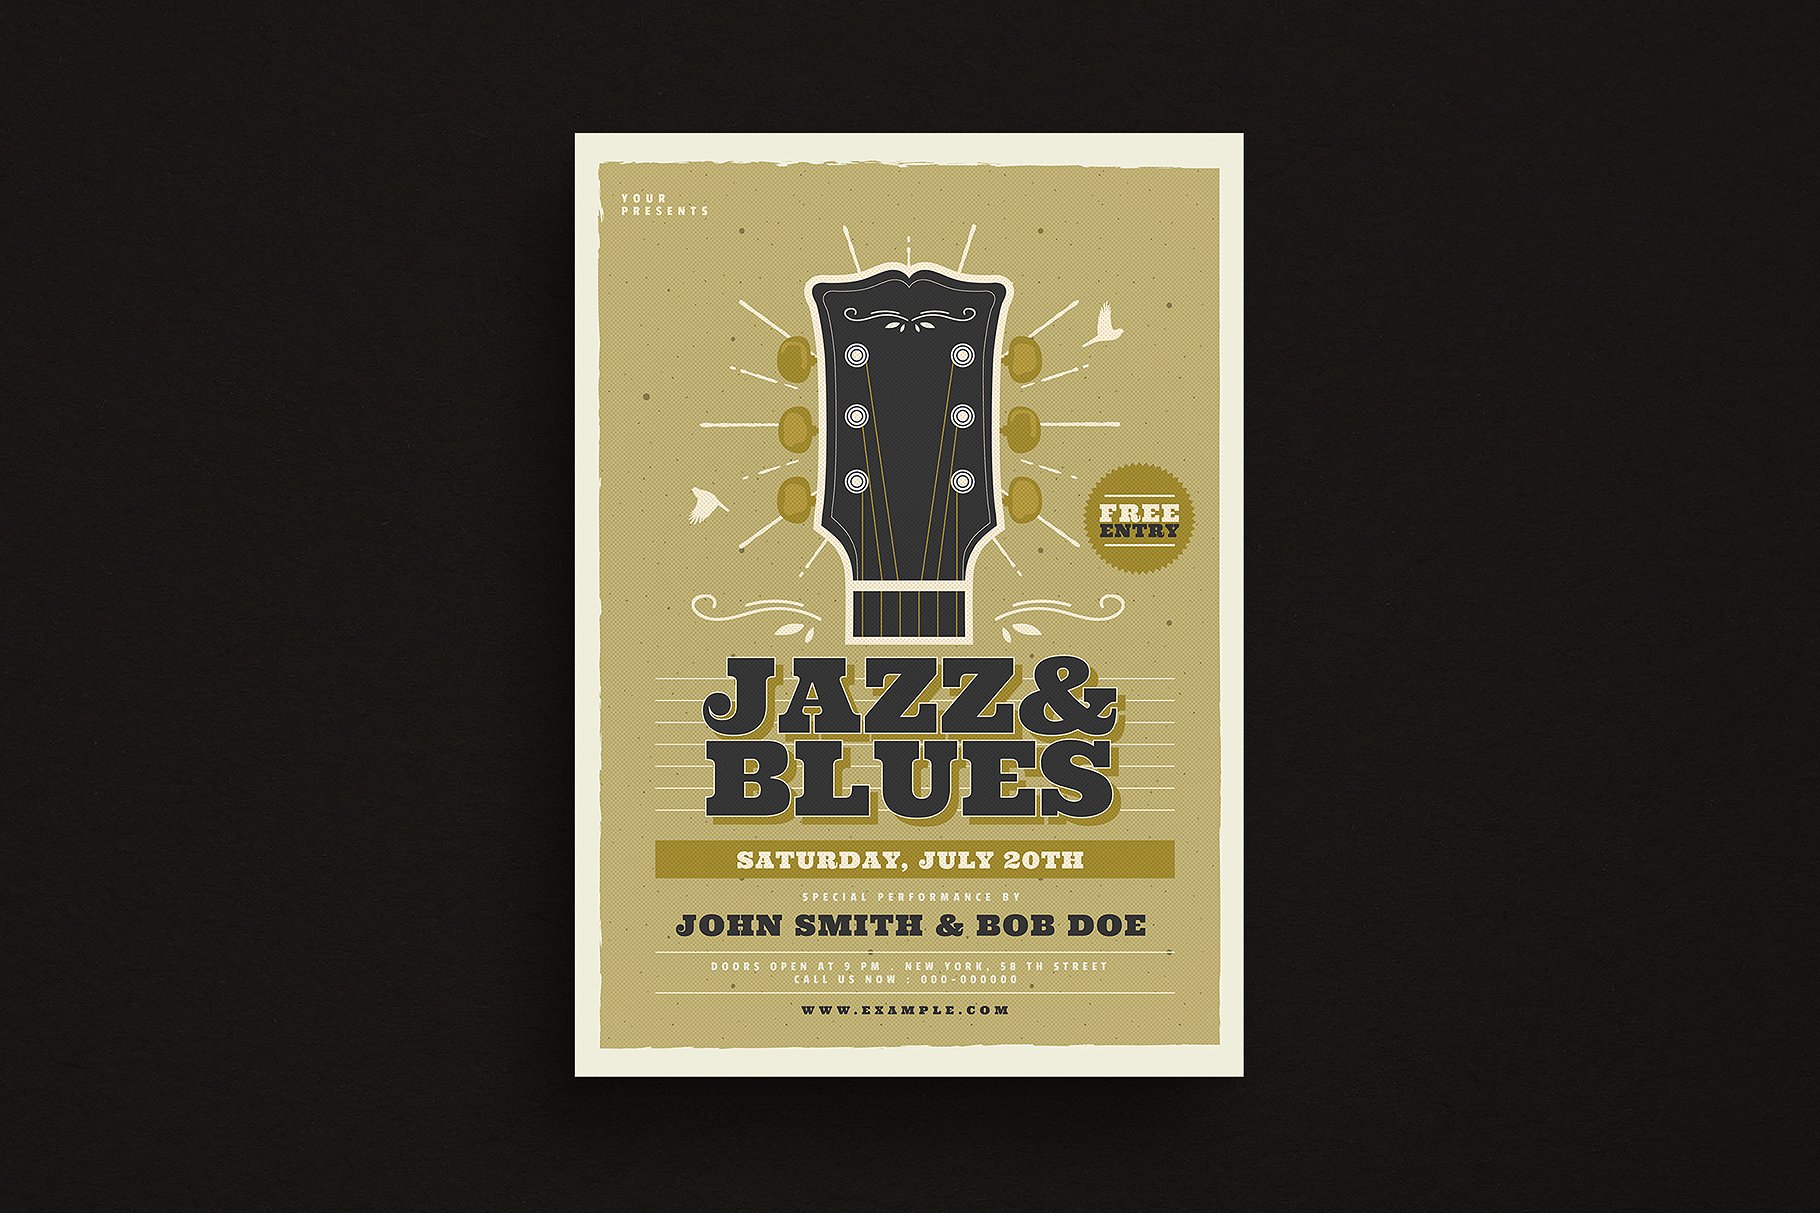 爵士蓝调音乐活动宣传单设计模板 Jazz & Blues Music Flyer插图